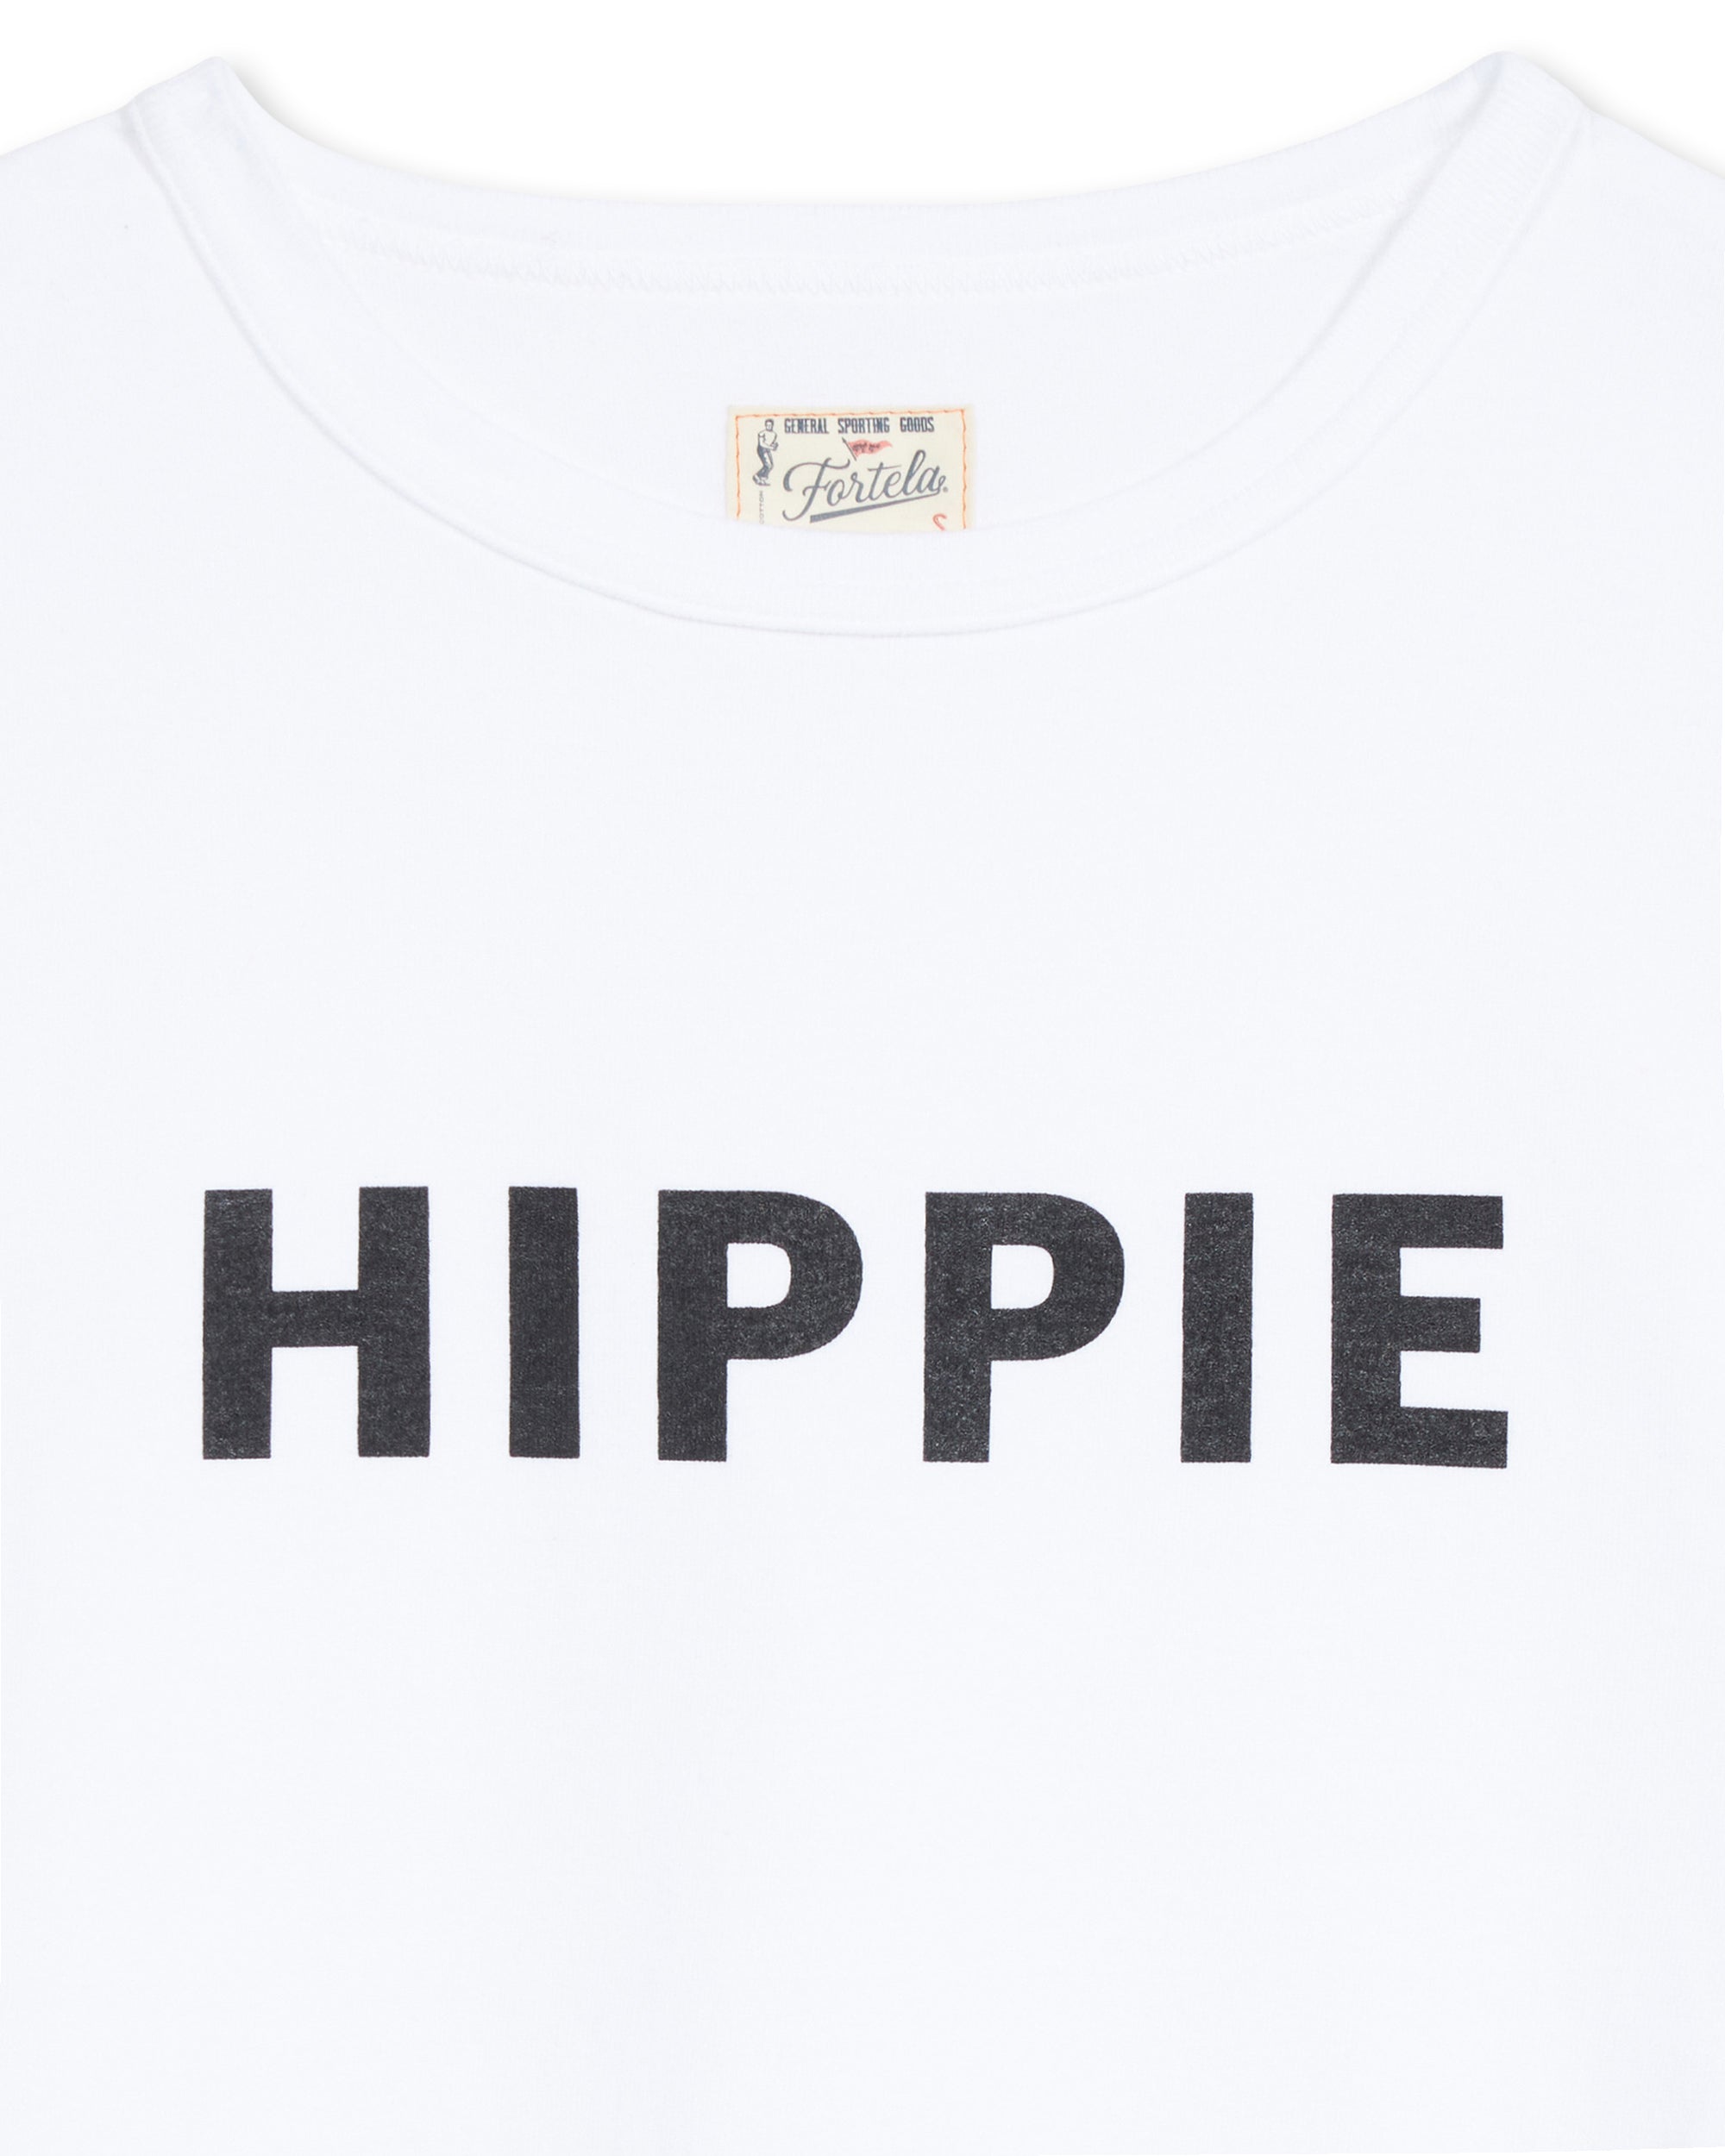 HIPPIET-9930S            WHI